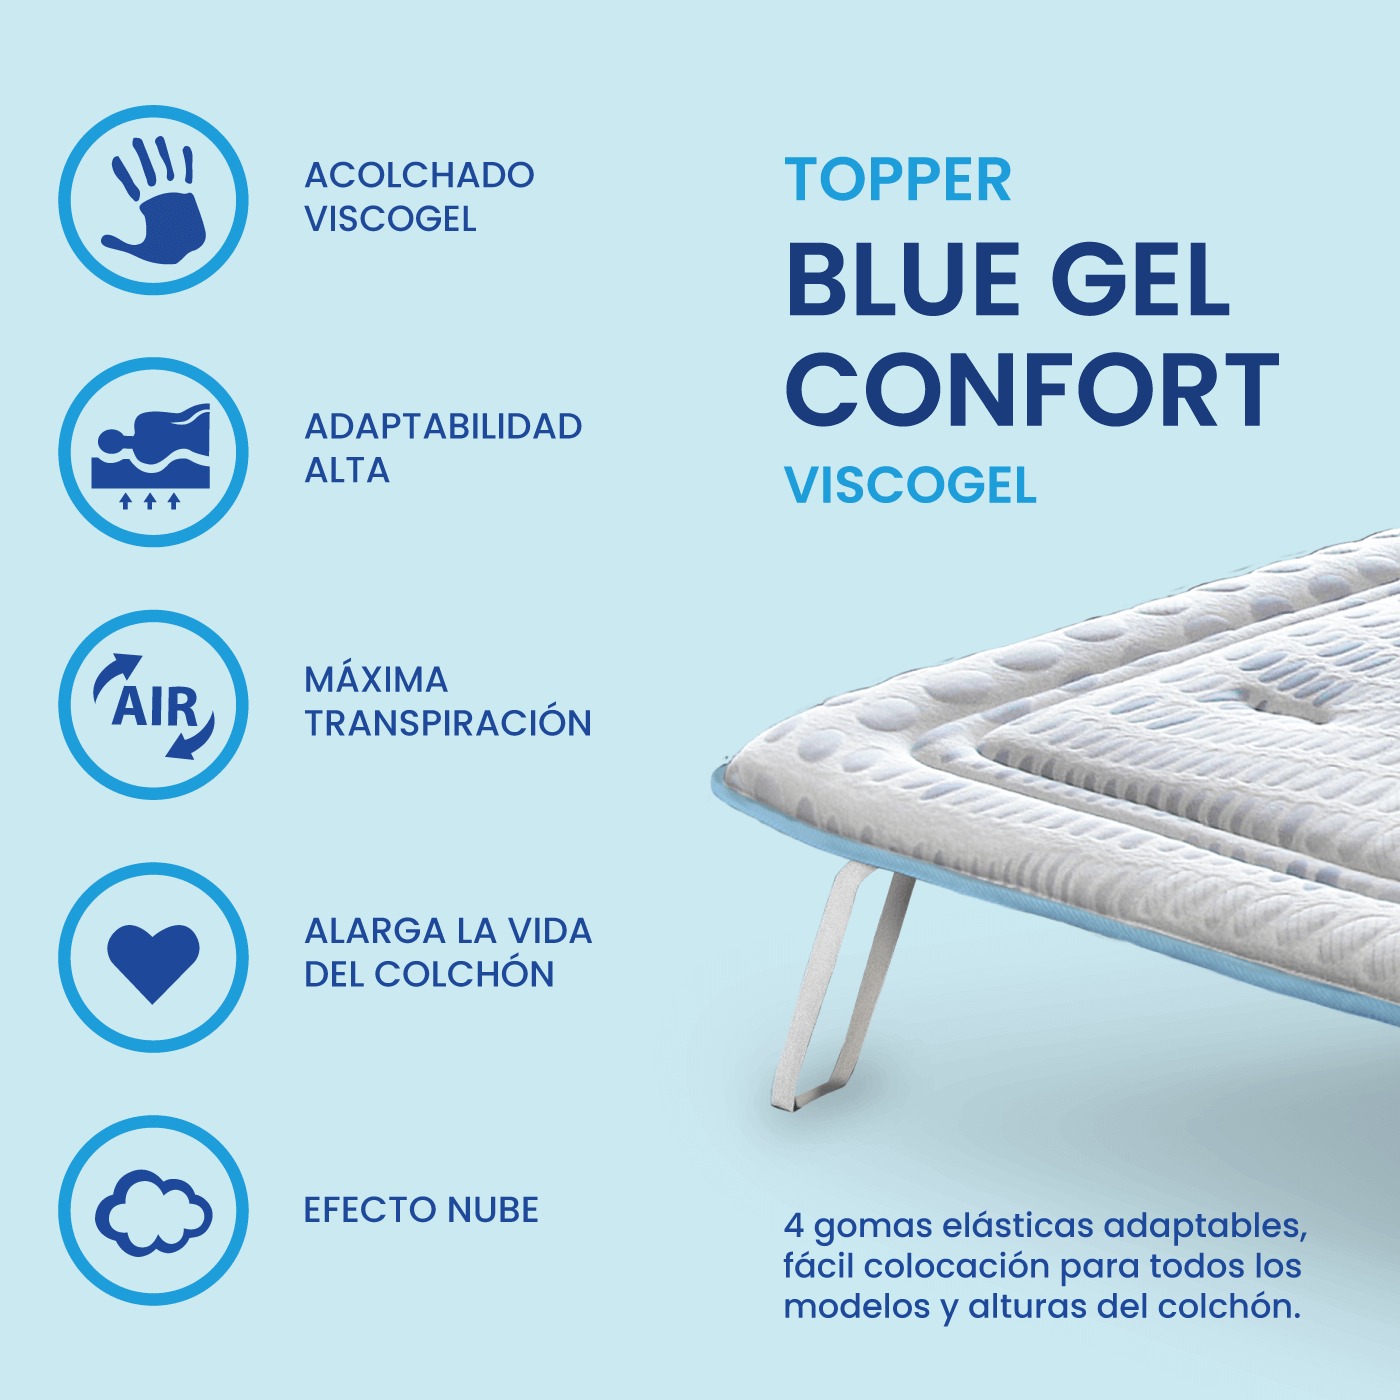 Topper sobre colchón Blue Gel Confort, Viscogel